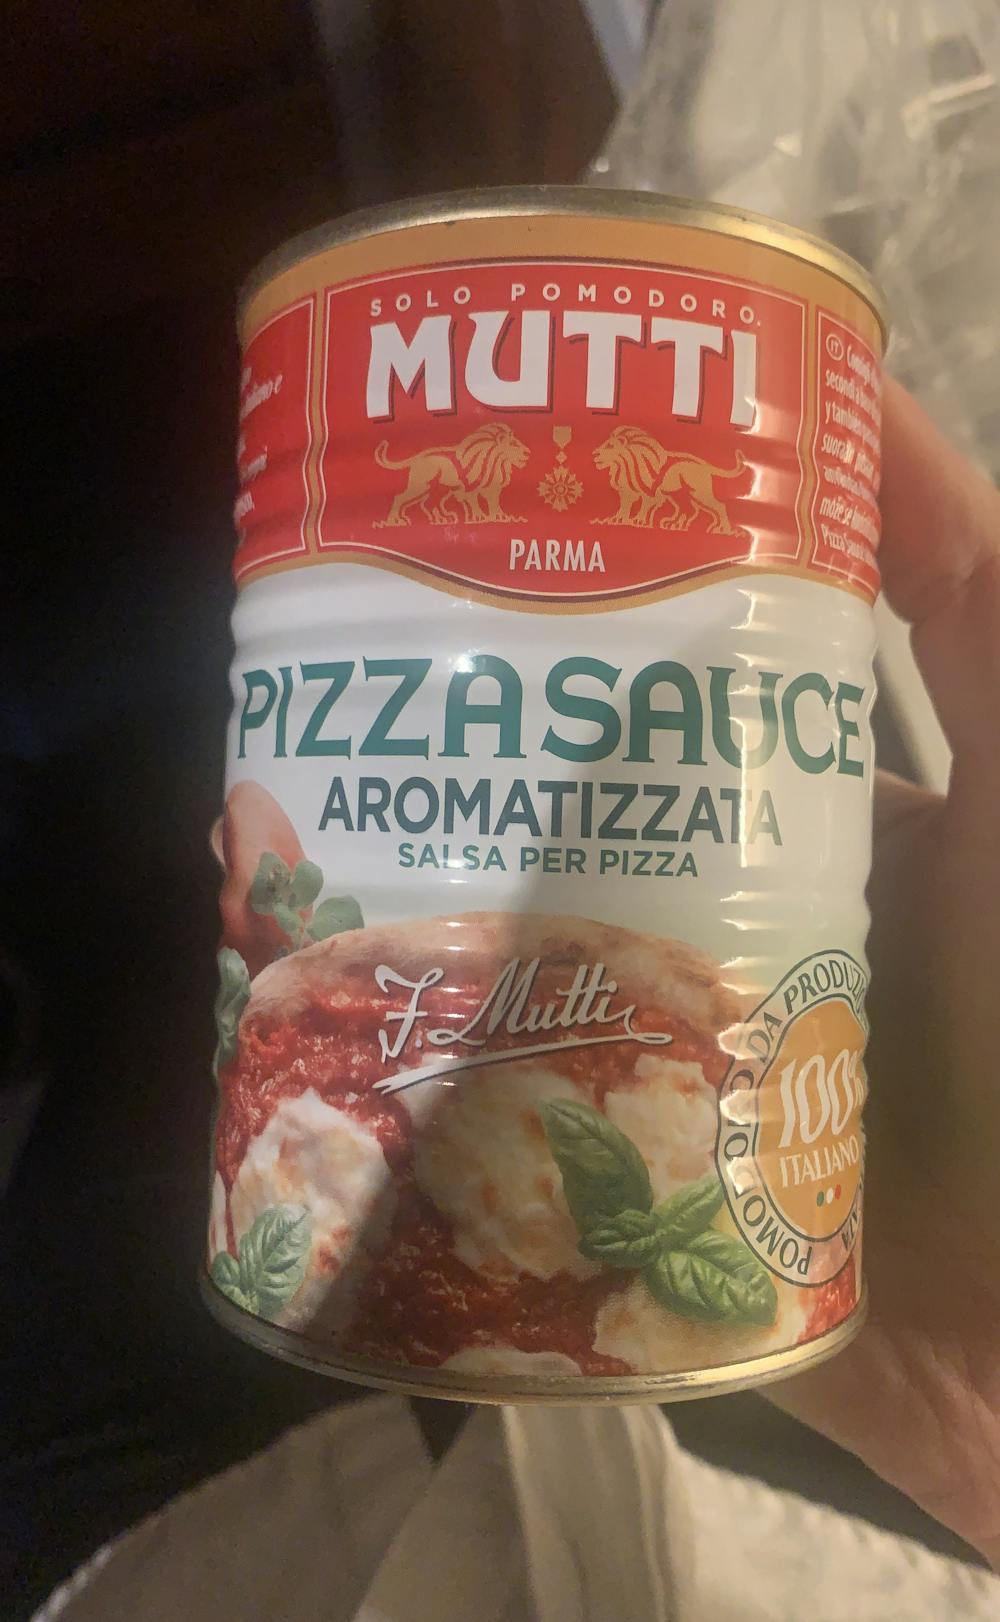 Pizzasaus aromatizzata, Mutti